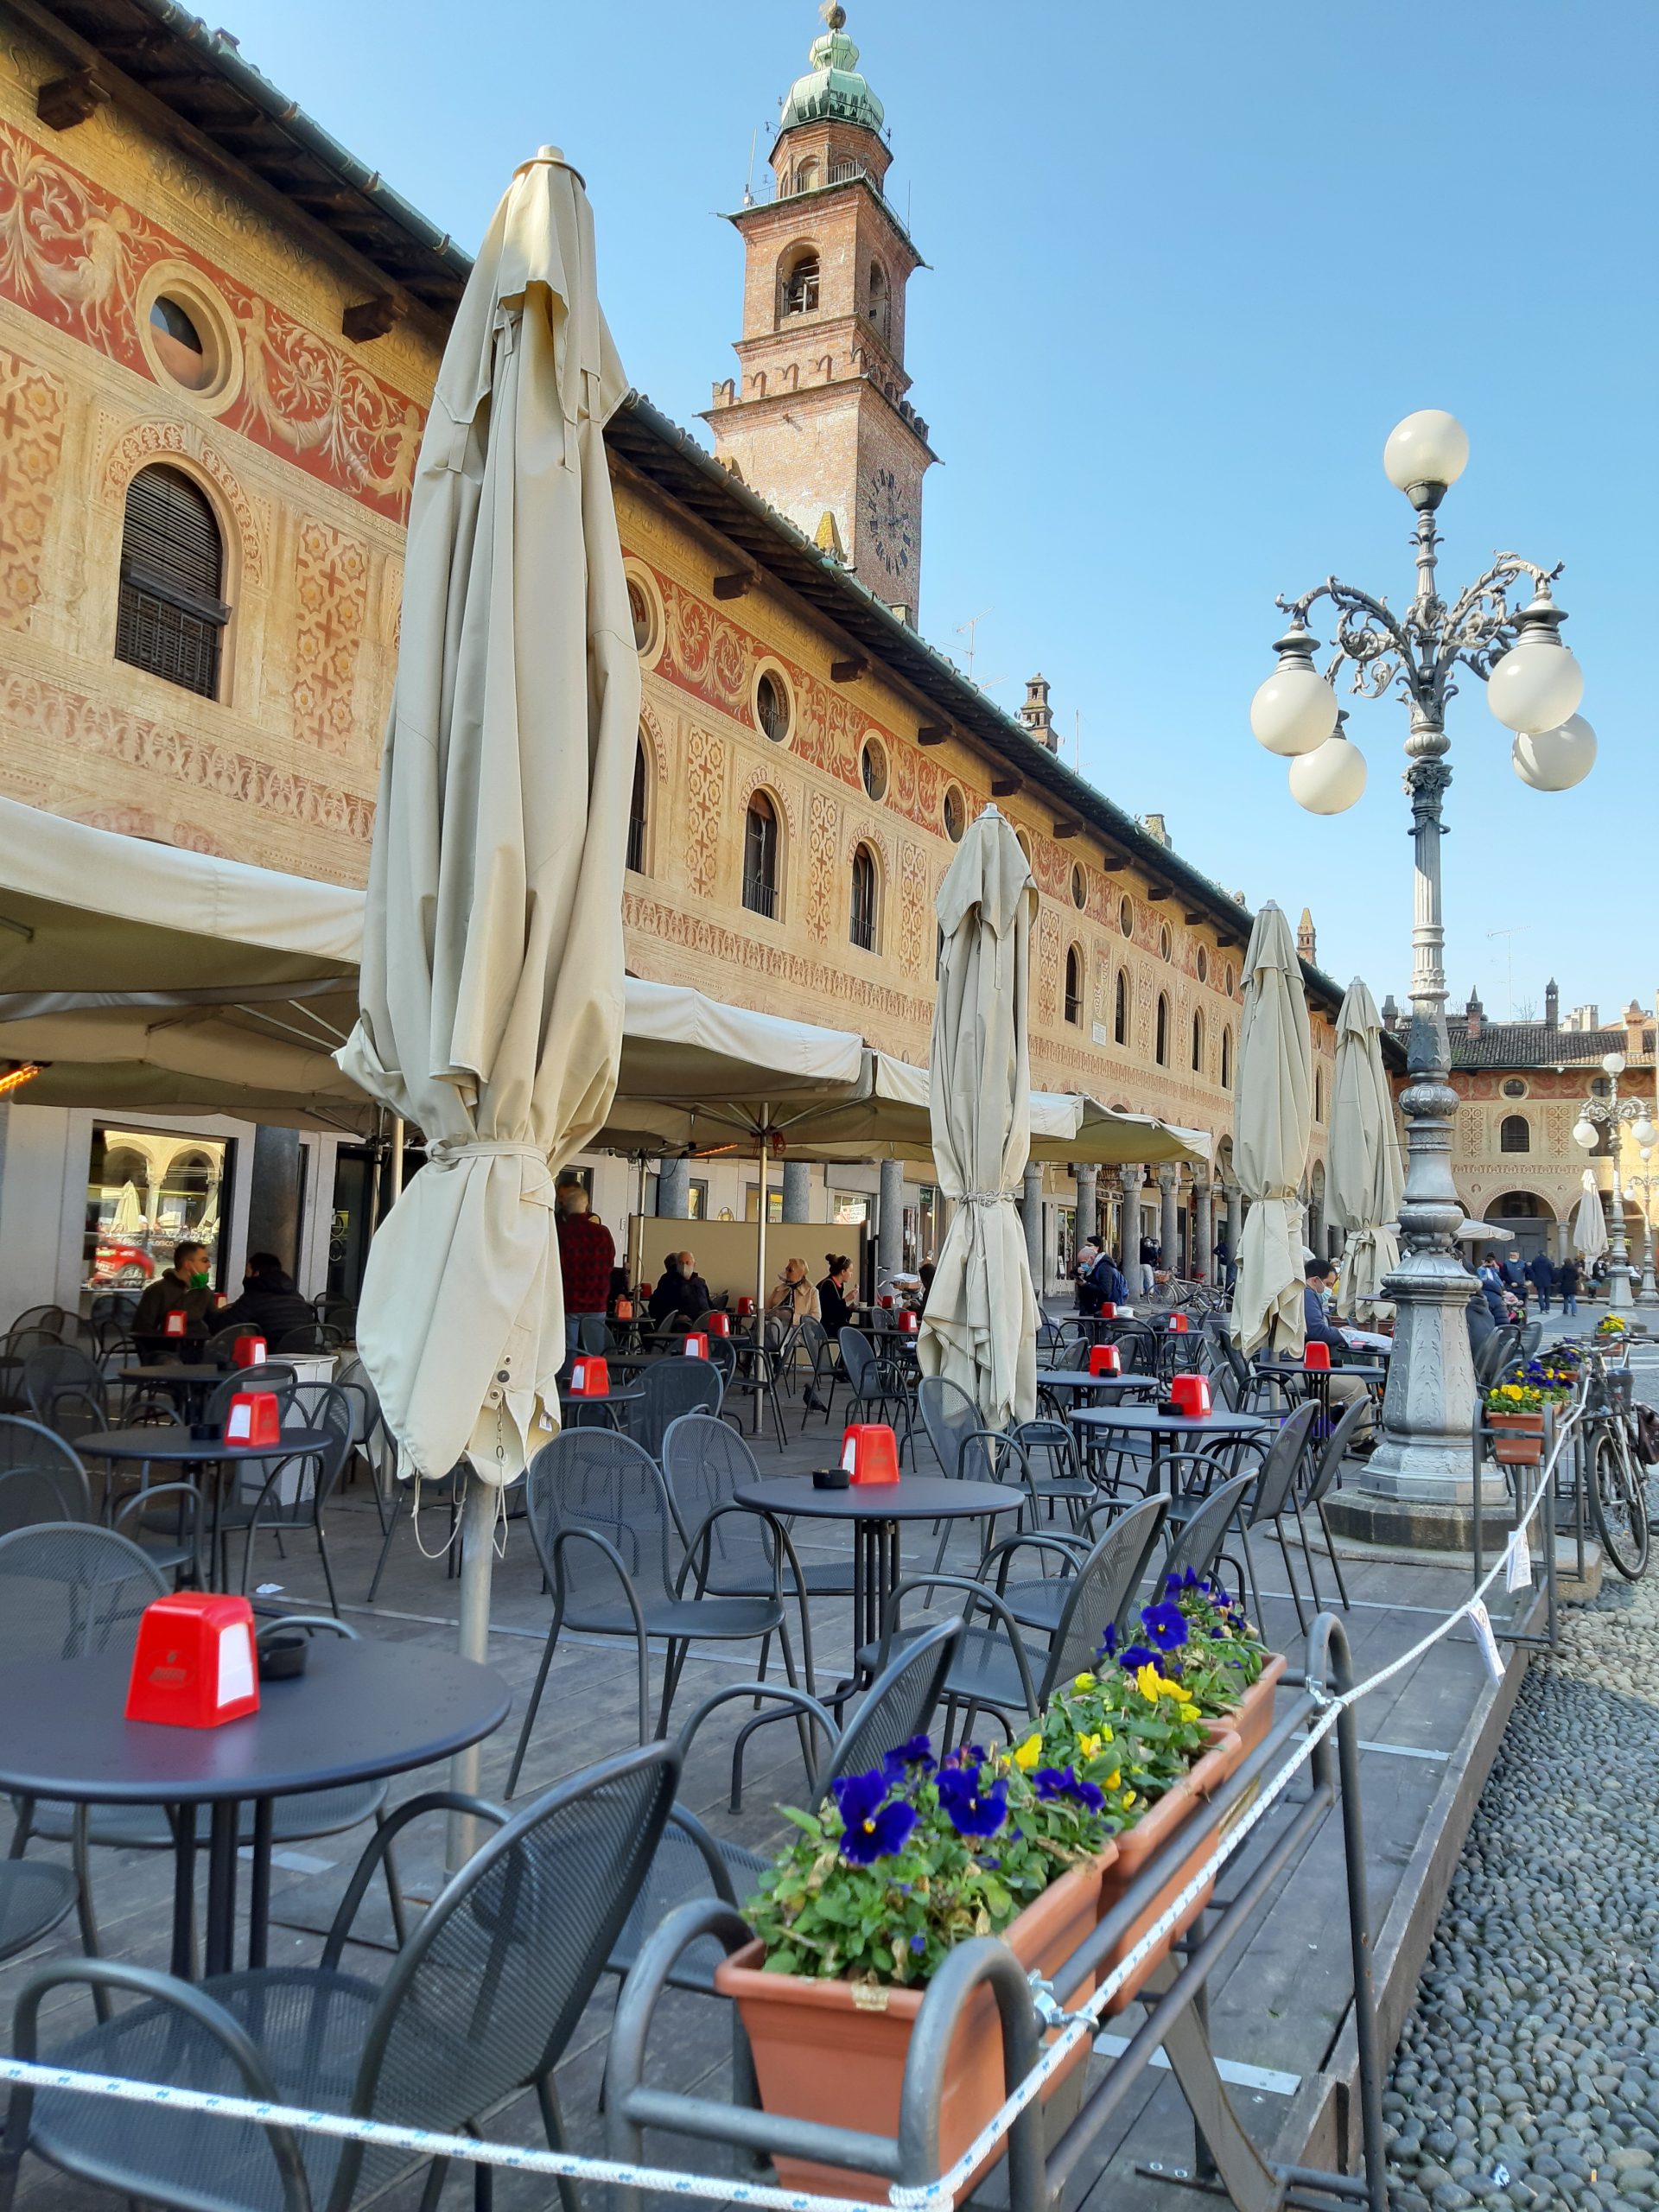 Piazza Ducale da cidade de Vigevano na Lombardia, Itália.